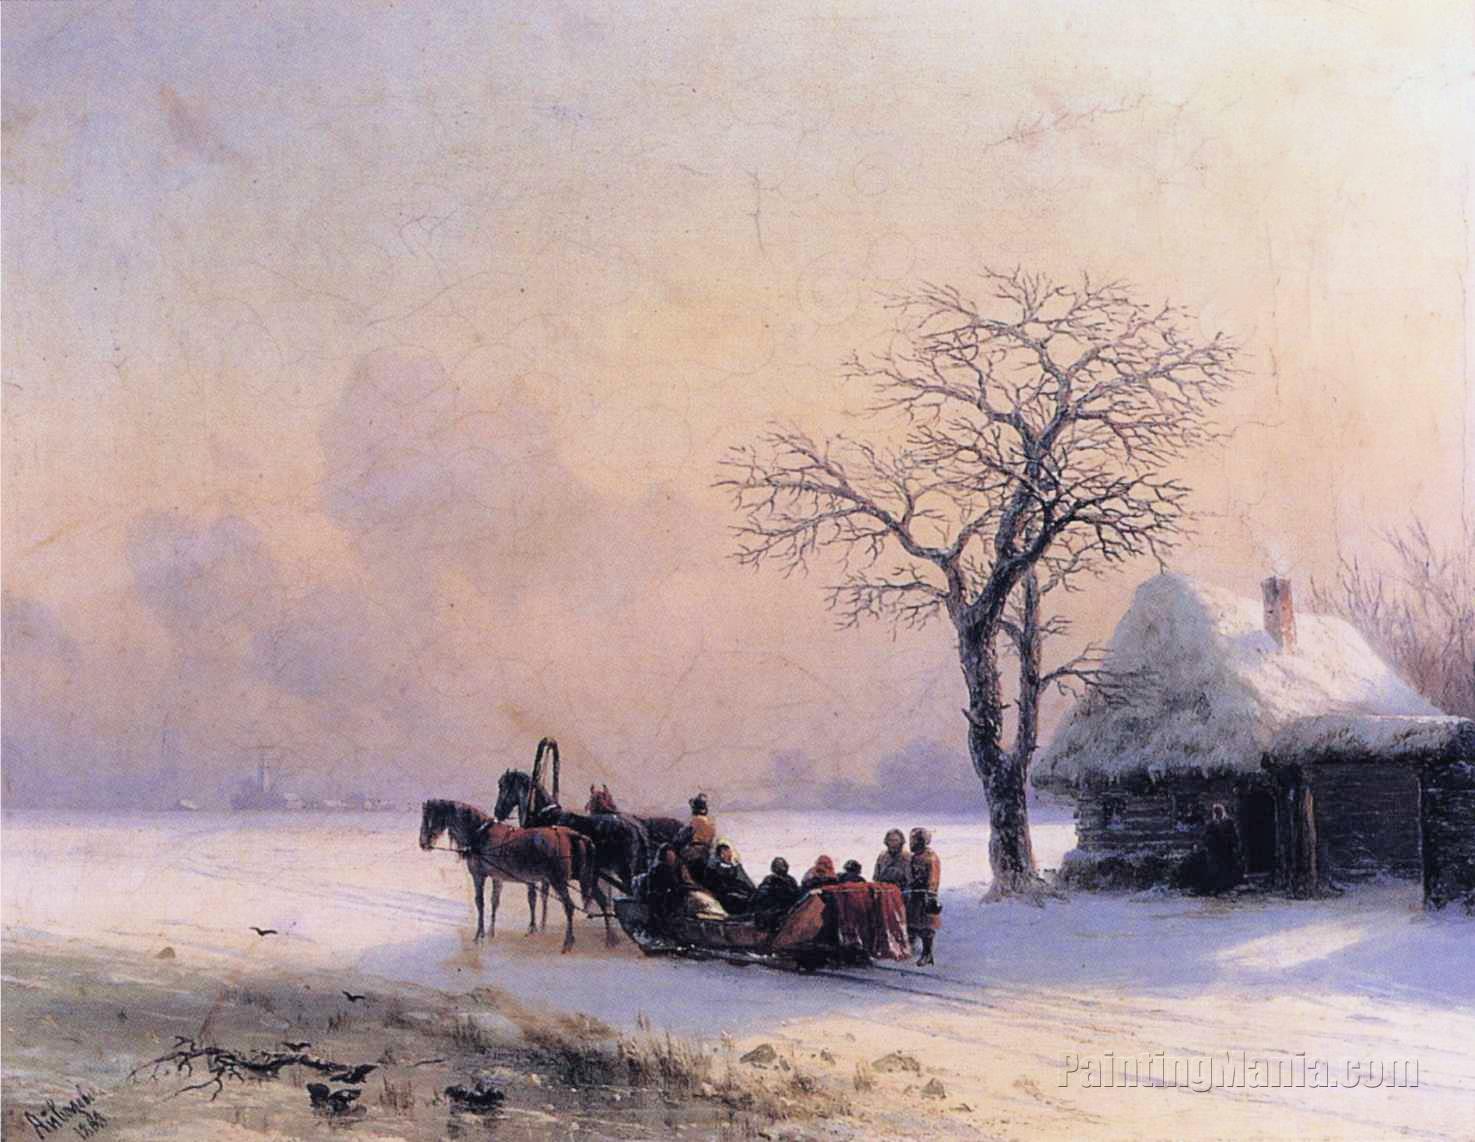 Winter Scene in Little Russia